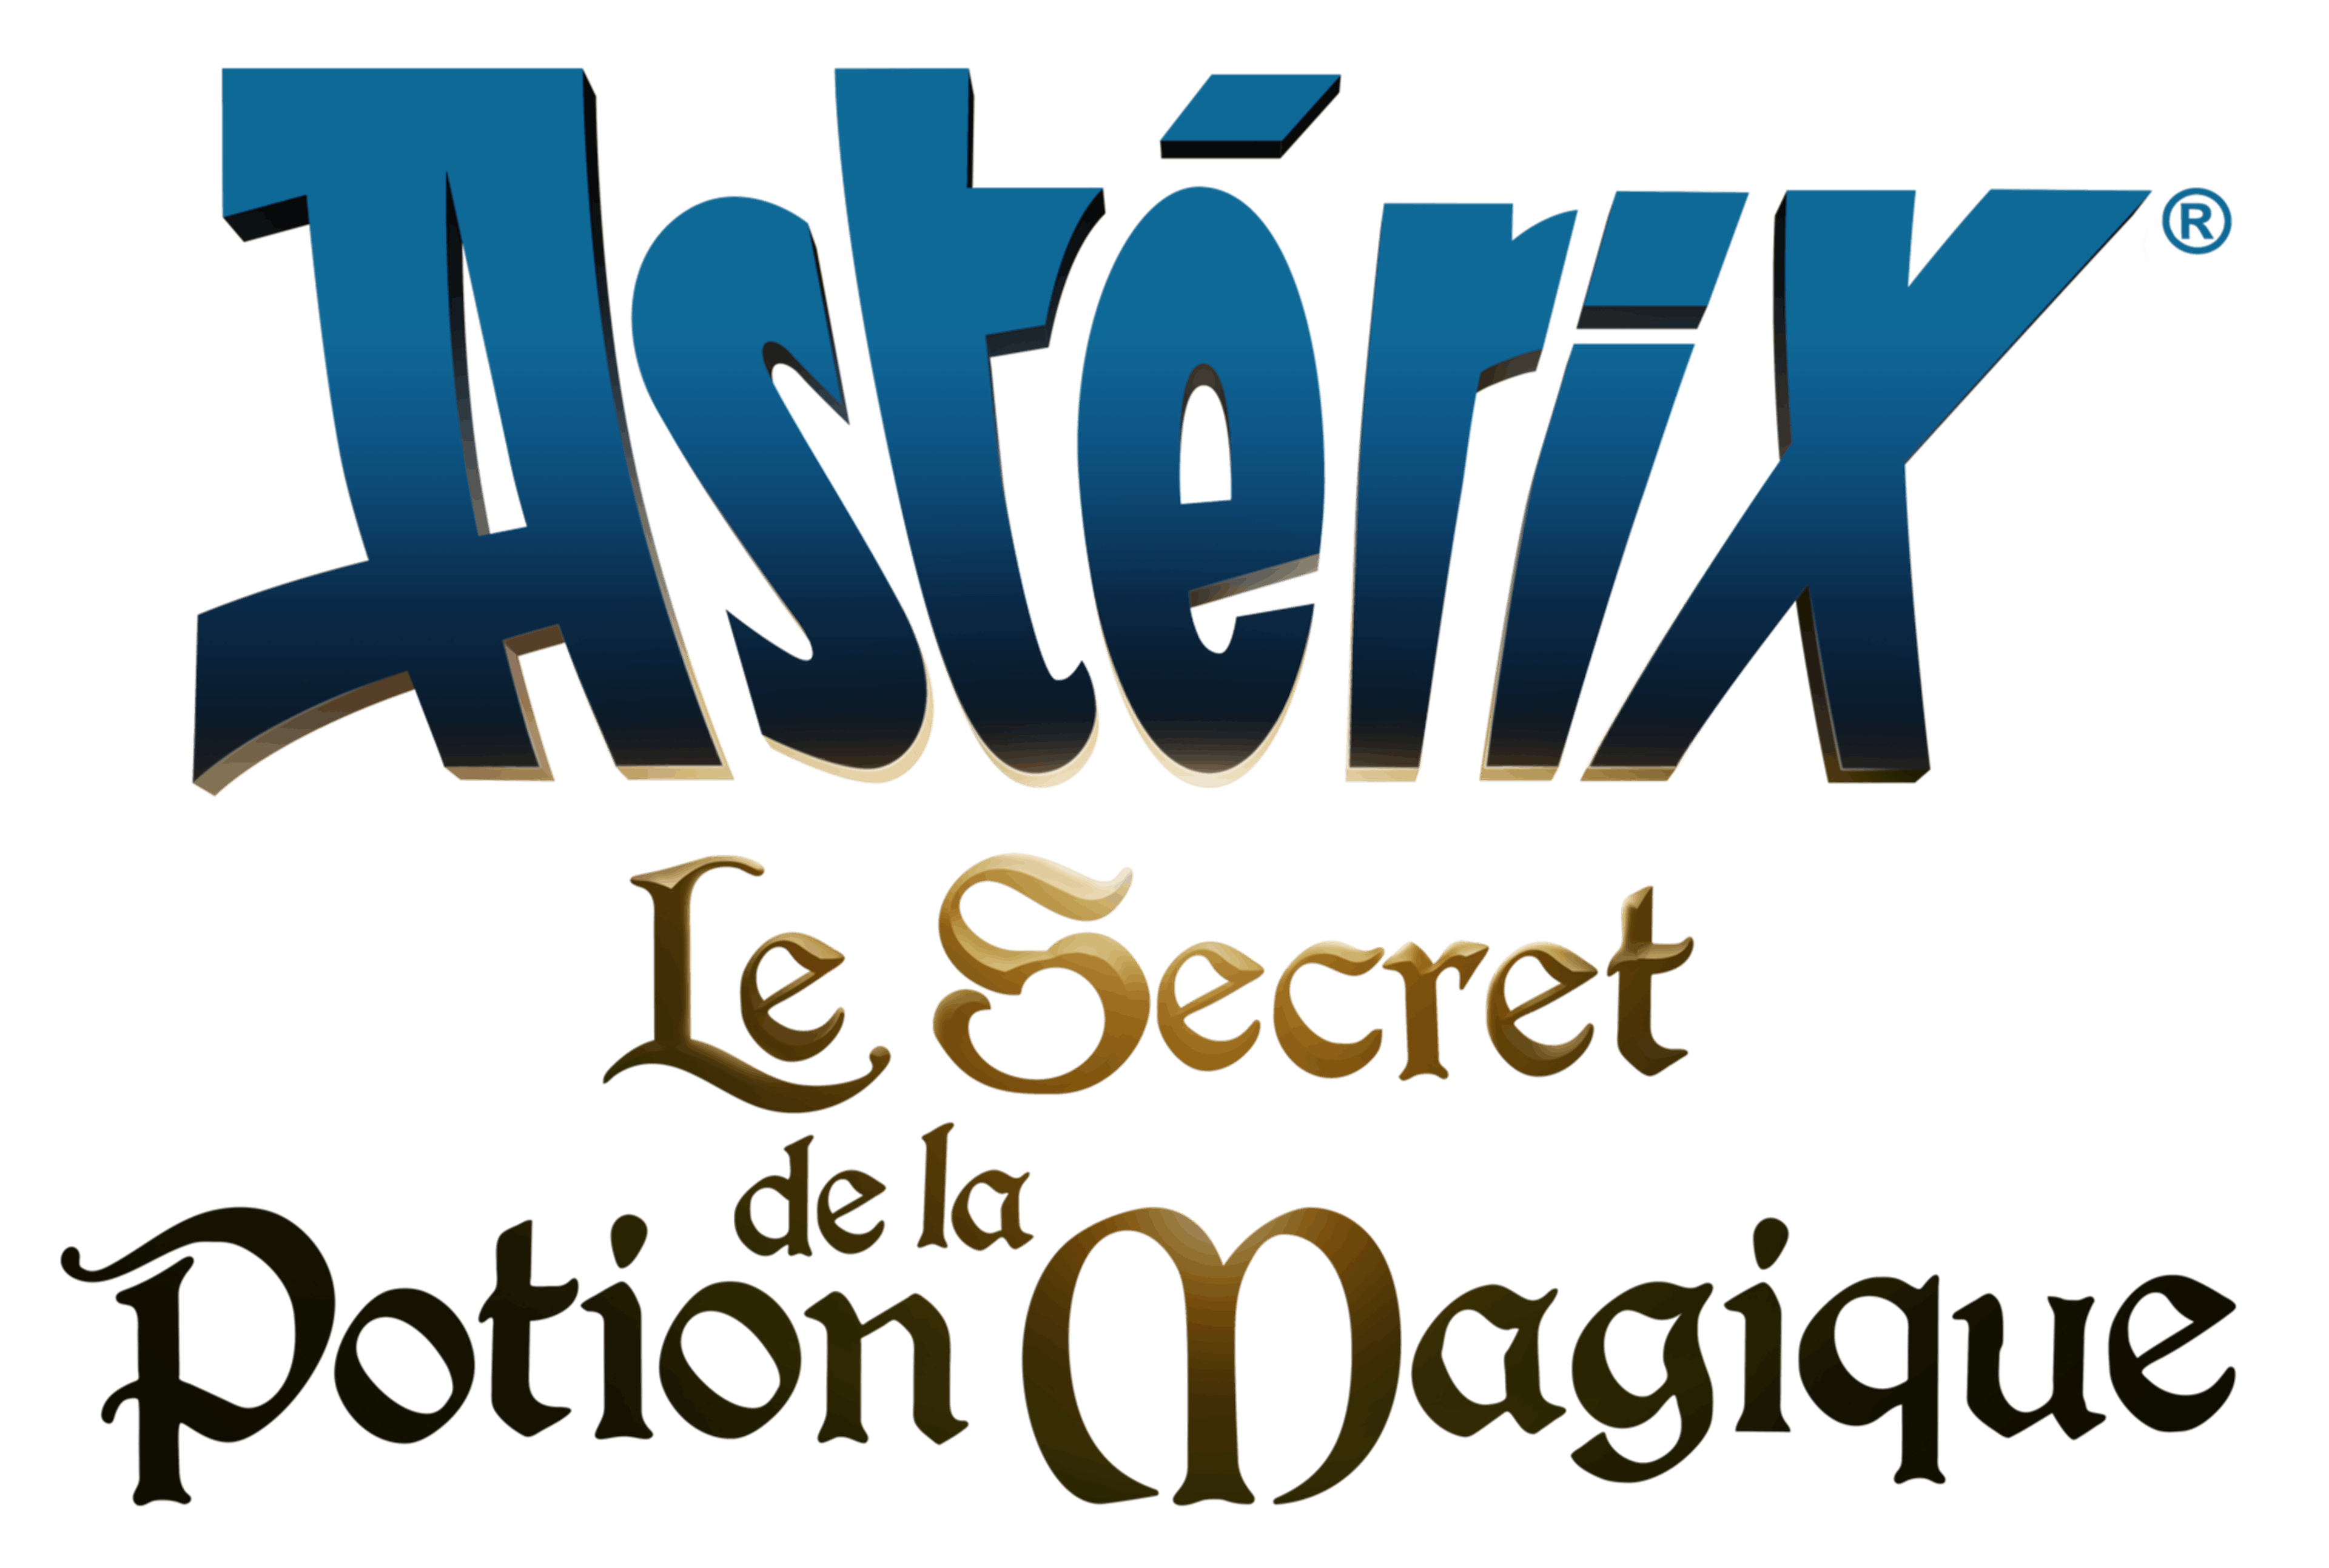 Astérix - Le secret de la potion magique